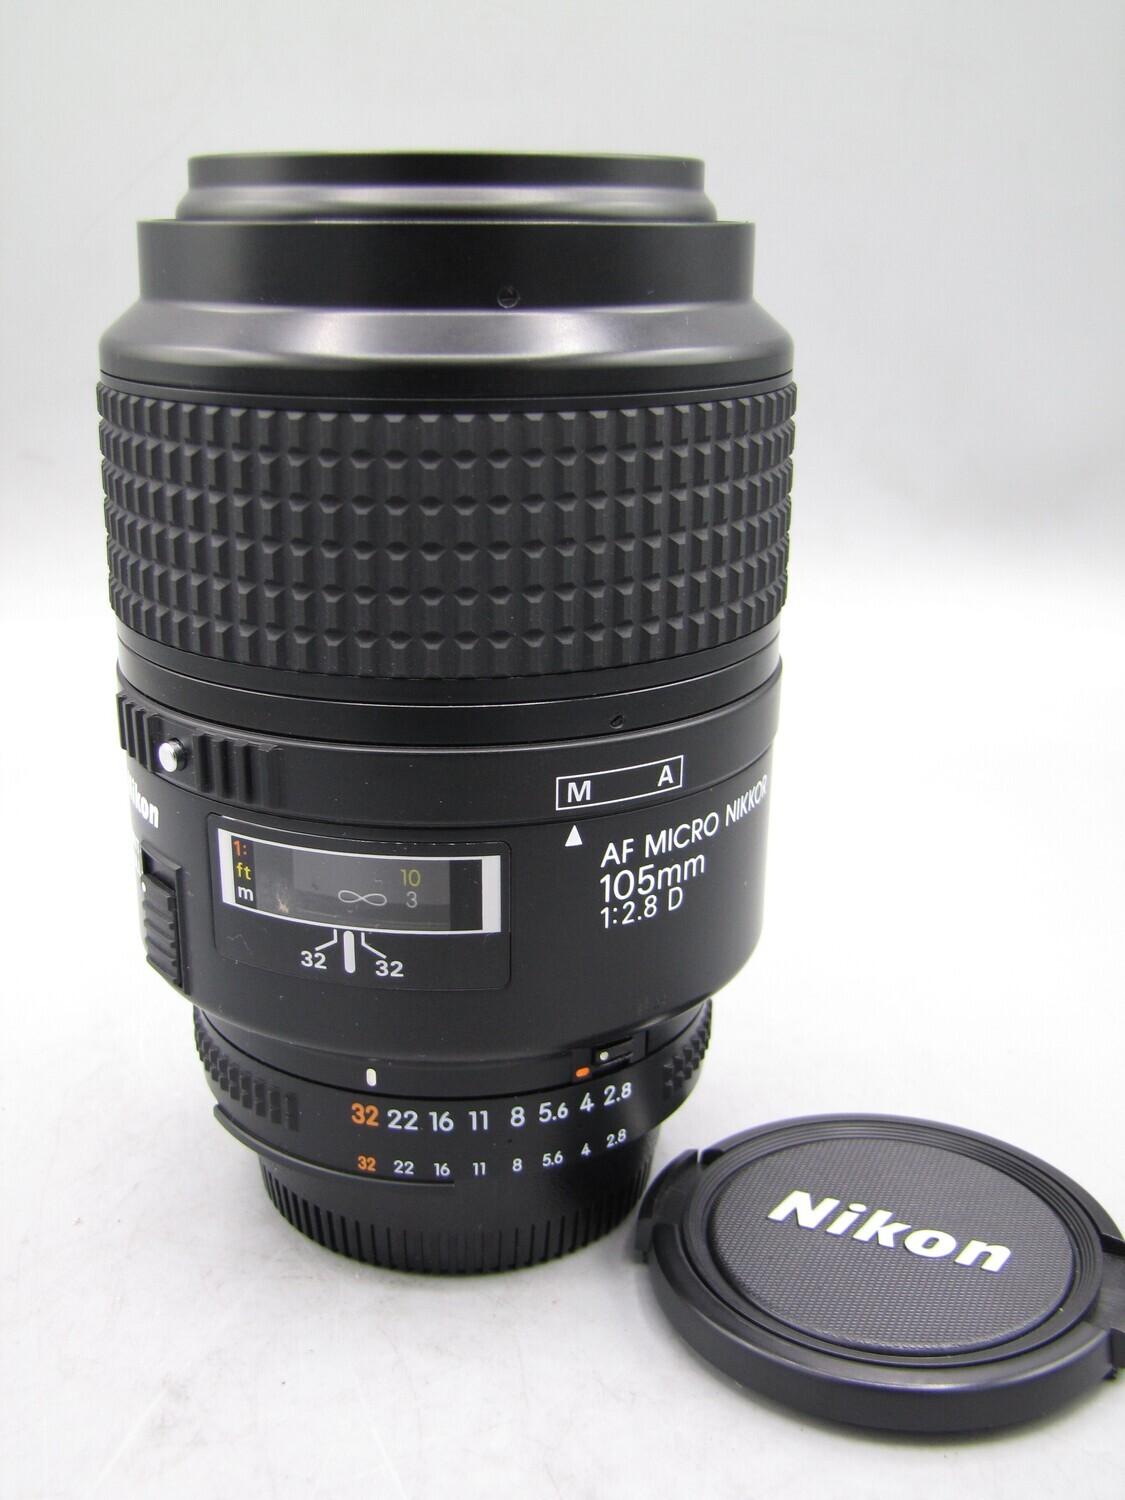 Nikon AF Micro Nikkor 105mm 1:2.8 D Lens SR. Tested